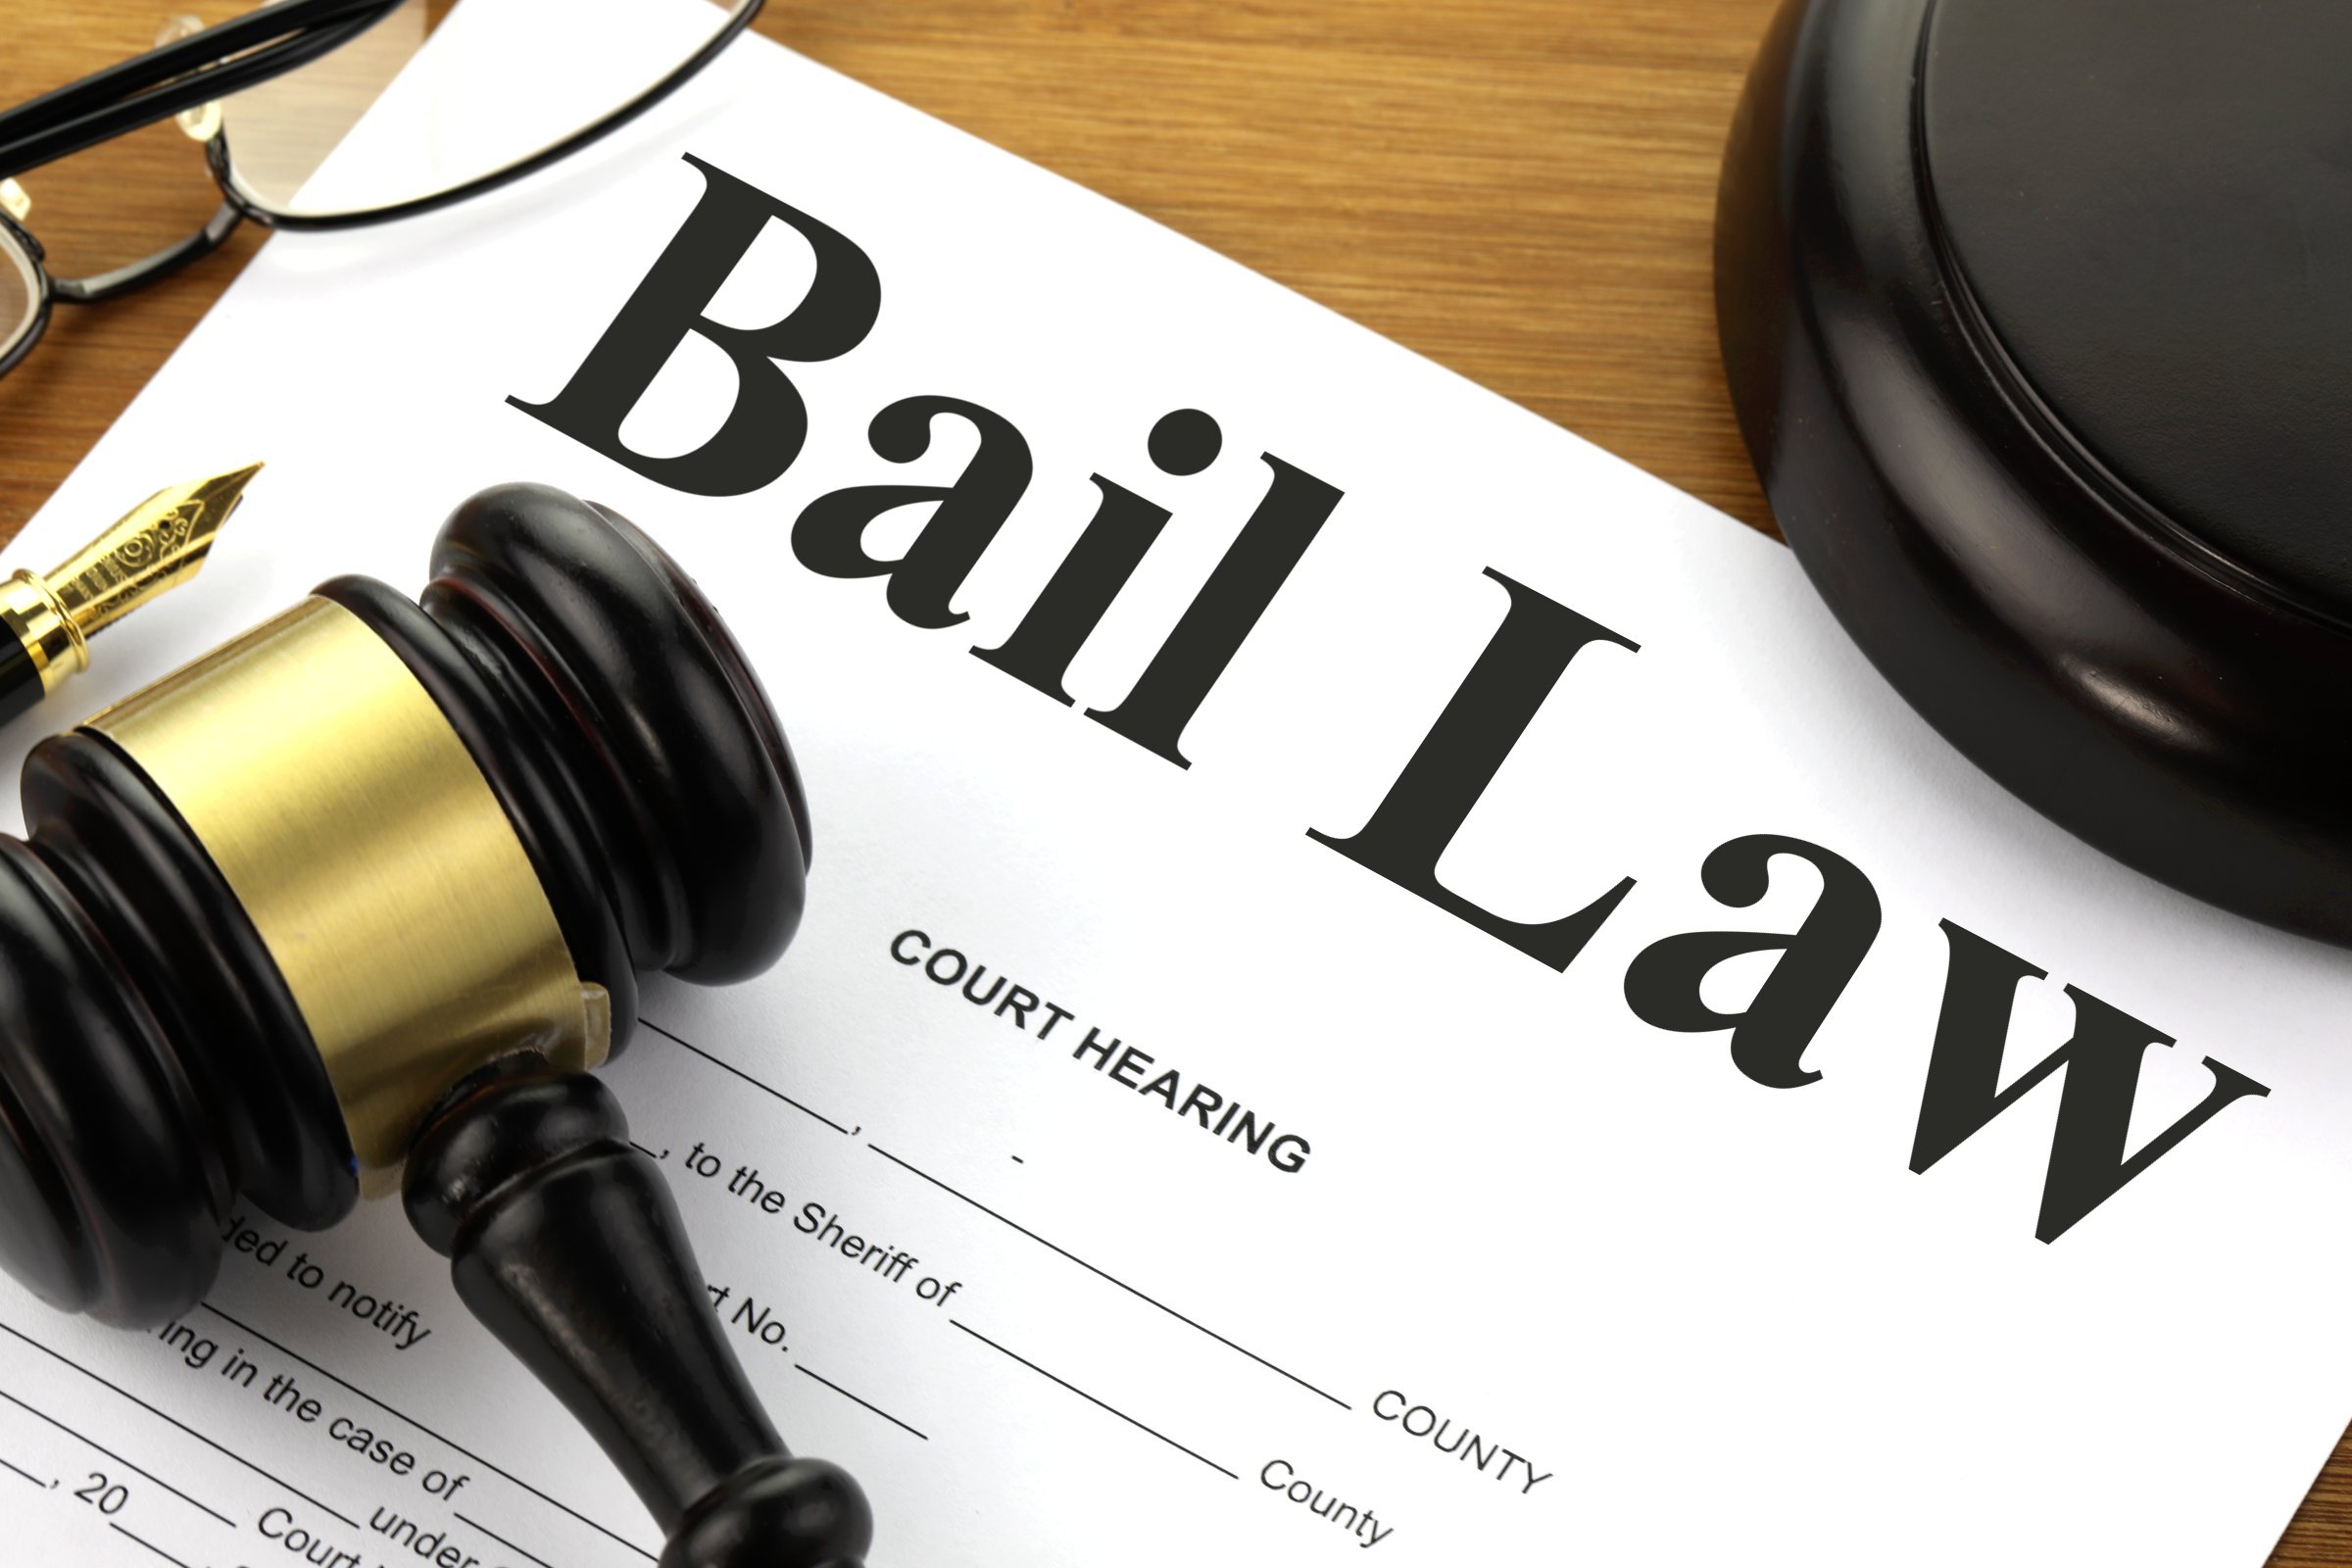 bail law